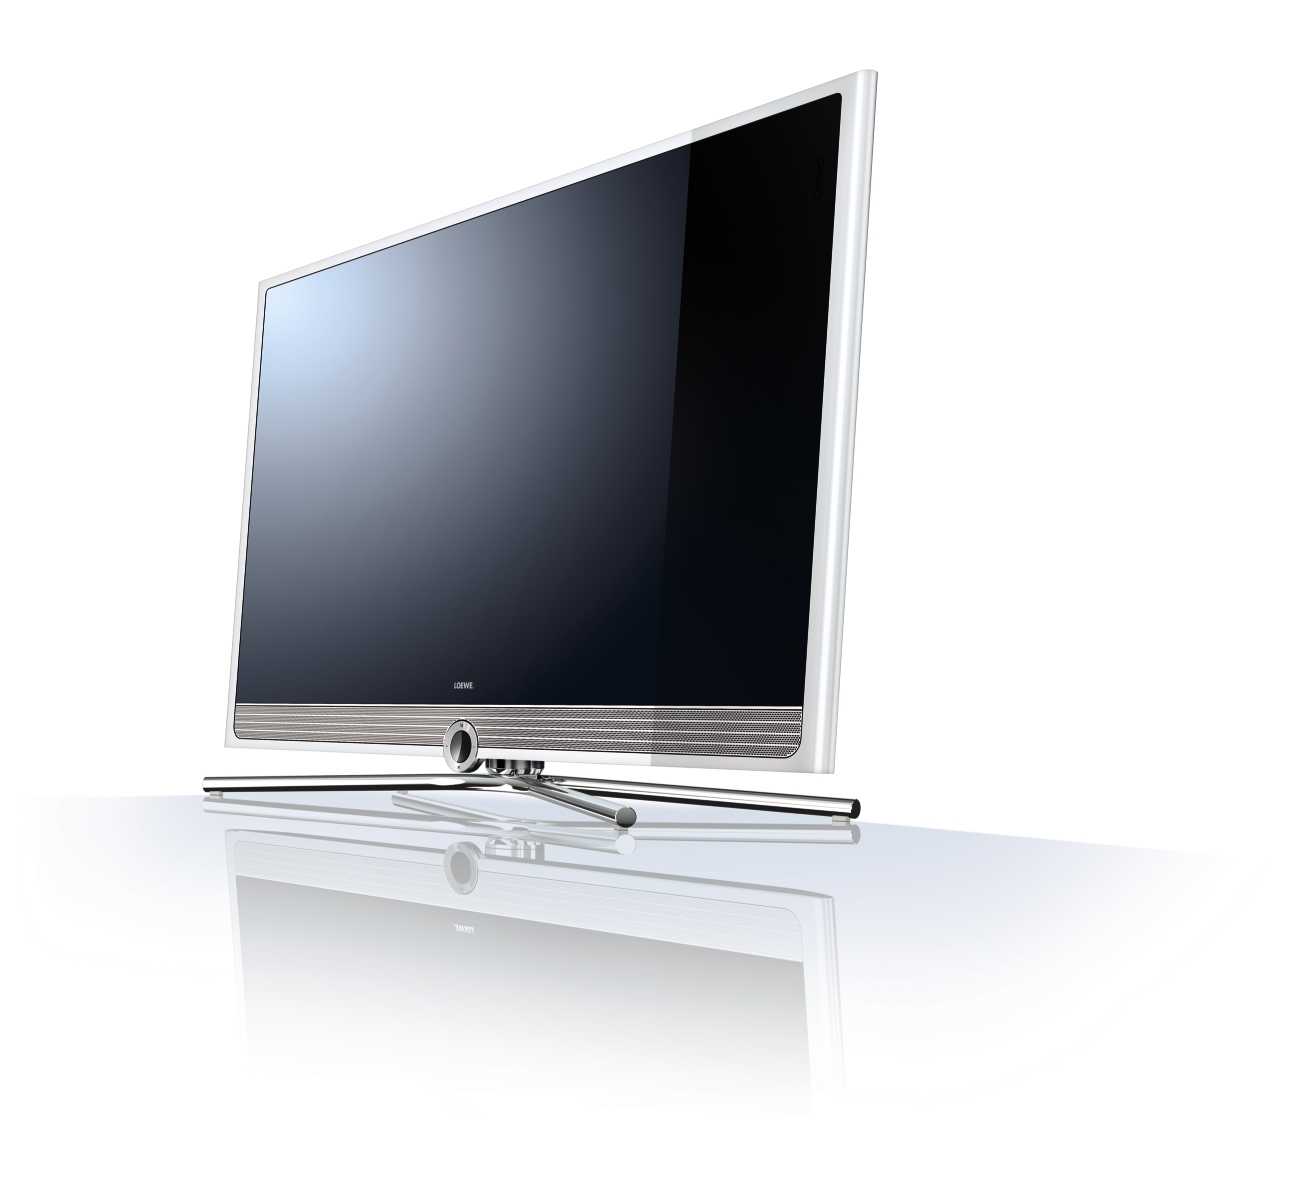 Телевизор (плазменный, lcd, crt) loewe art 32 led dr+: купить в россии - цены магазинов на sravni.com